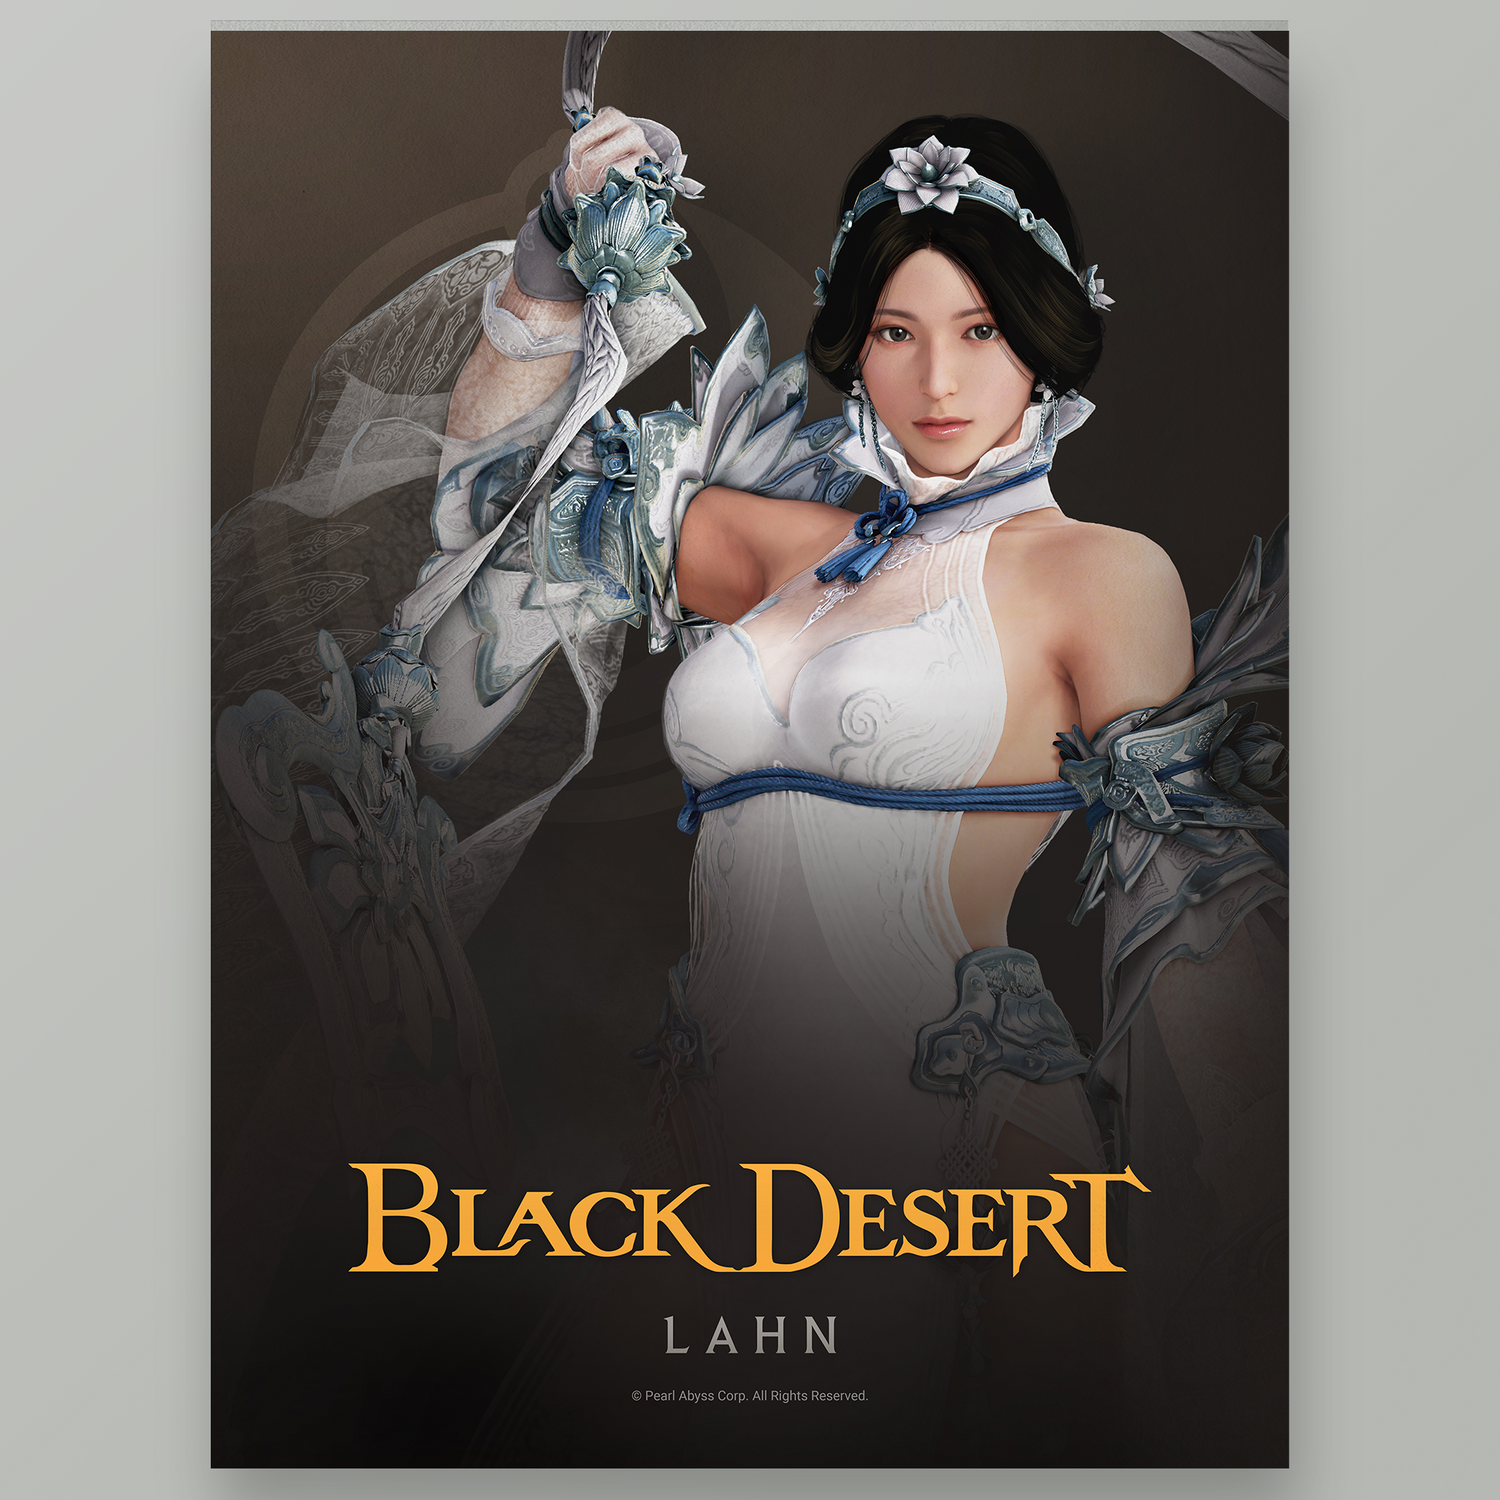 Black Desert Lahn Poster